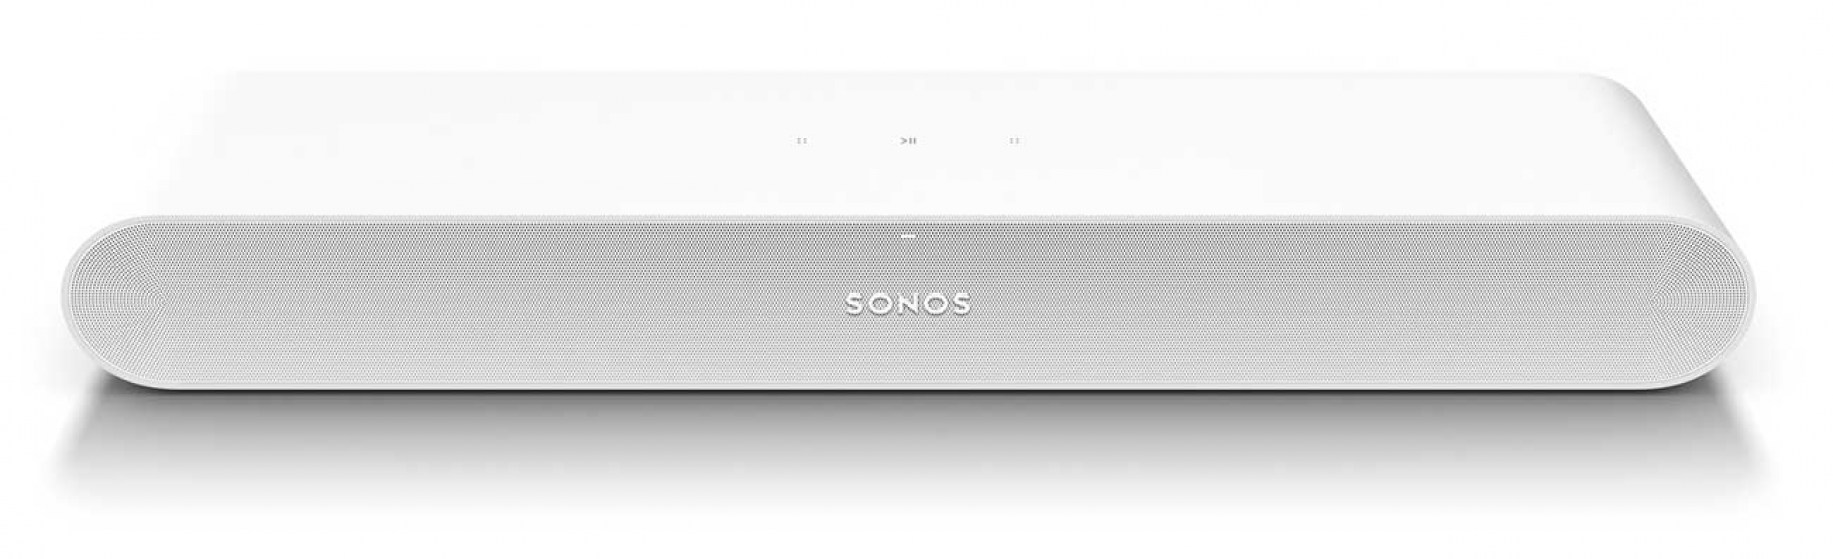 SONOS-Ray-White-Soundbar-Speaker-RAYG1US1-top-angled